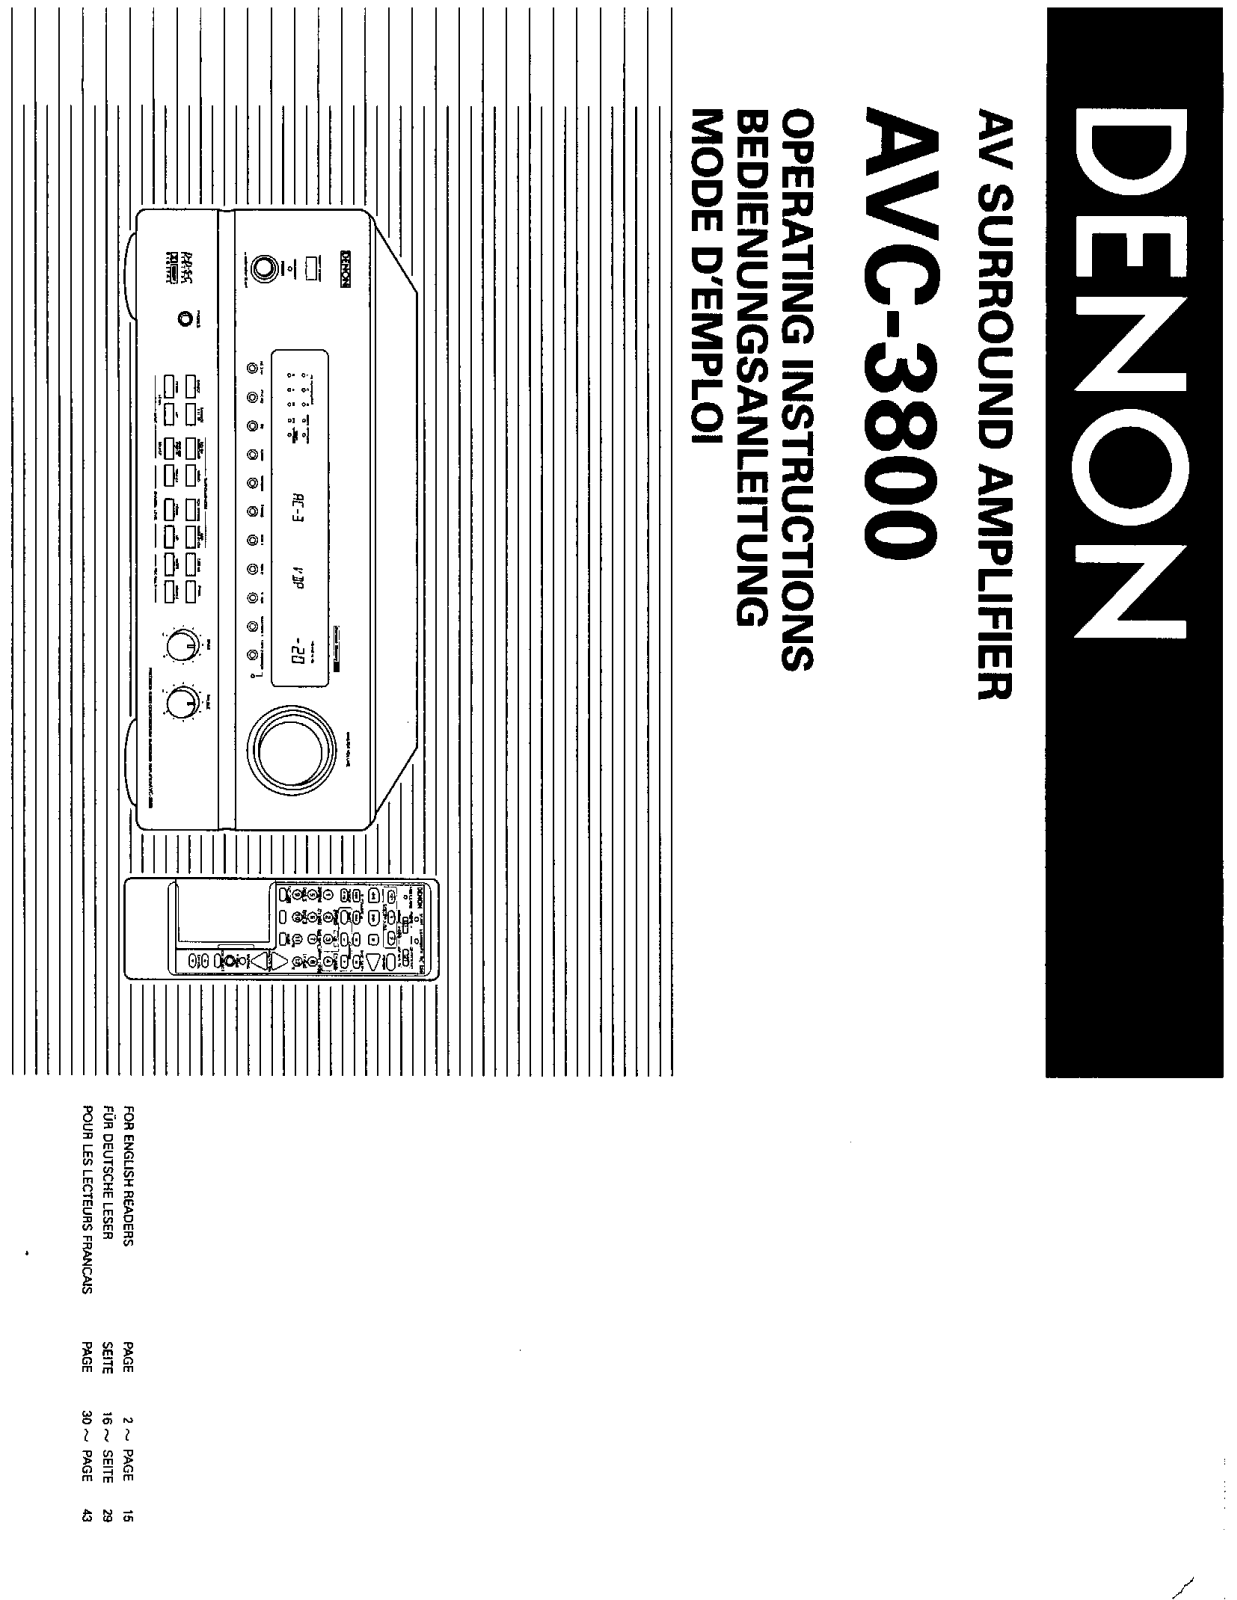 Denon AVC-3800 Owner's Manual